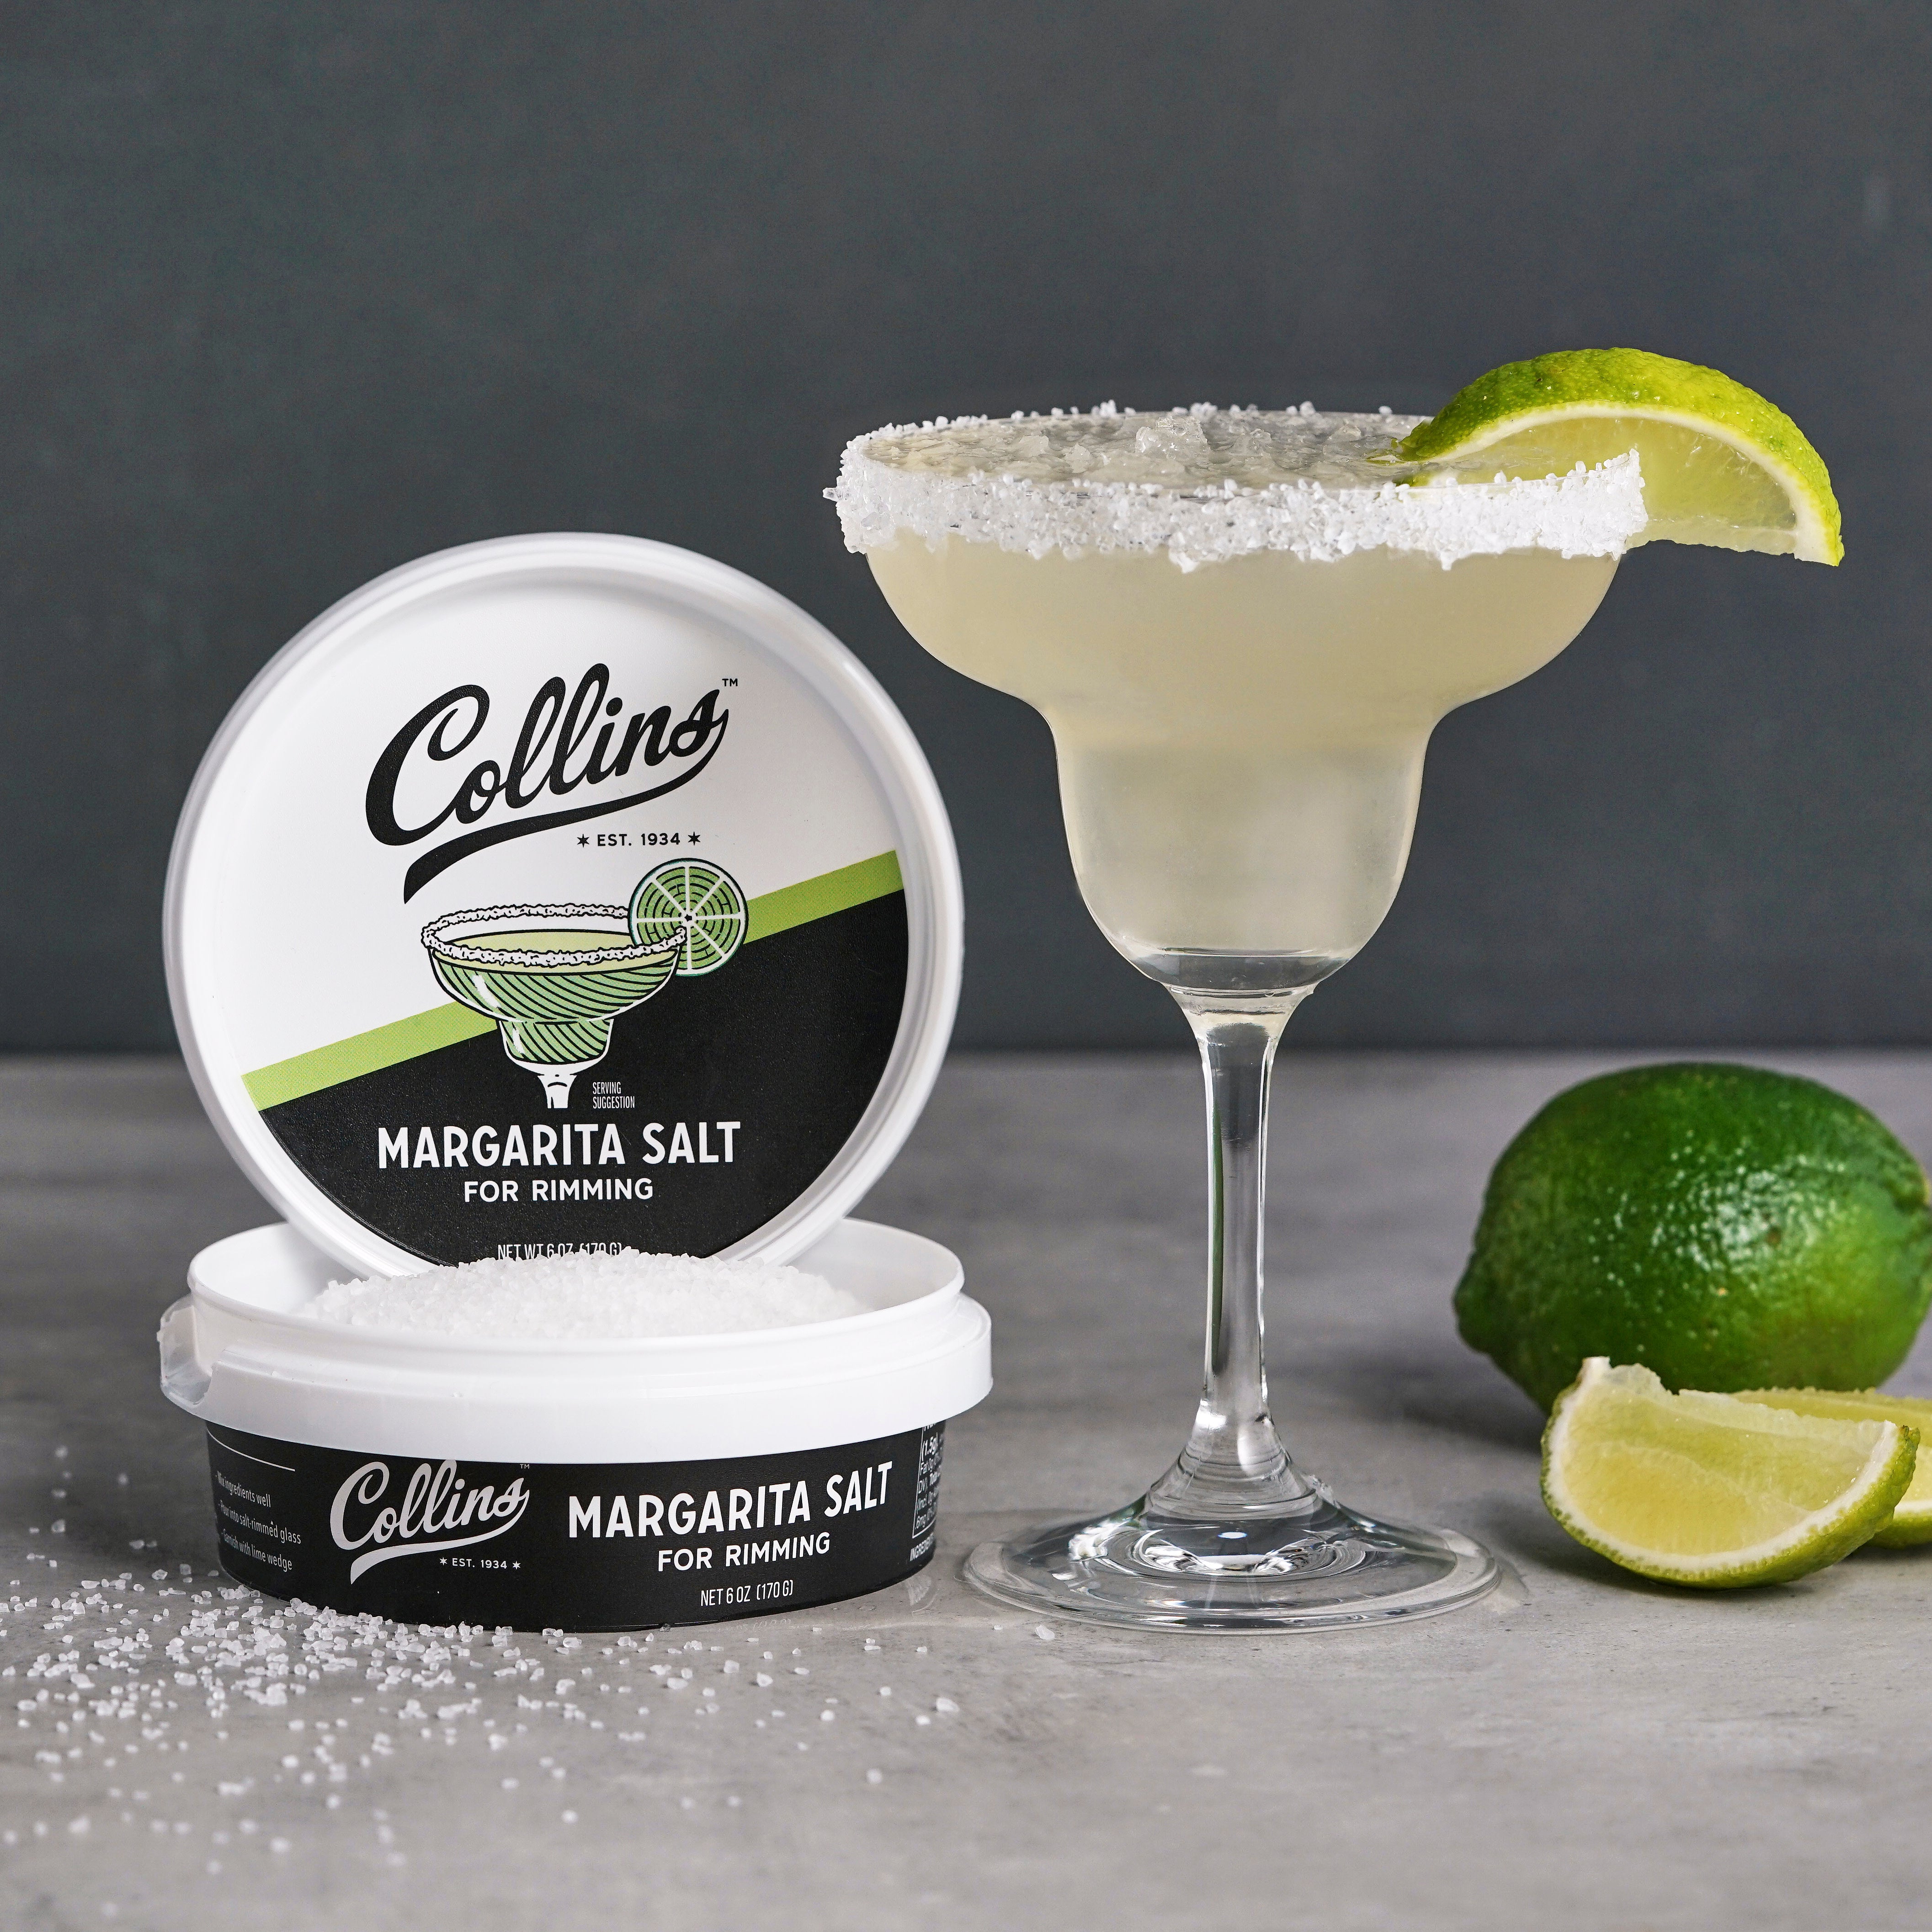 Margarita lime rim salt - Better than plain Margarita salt